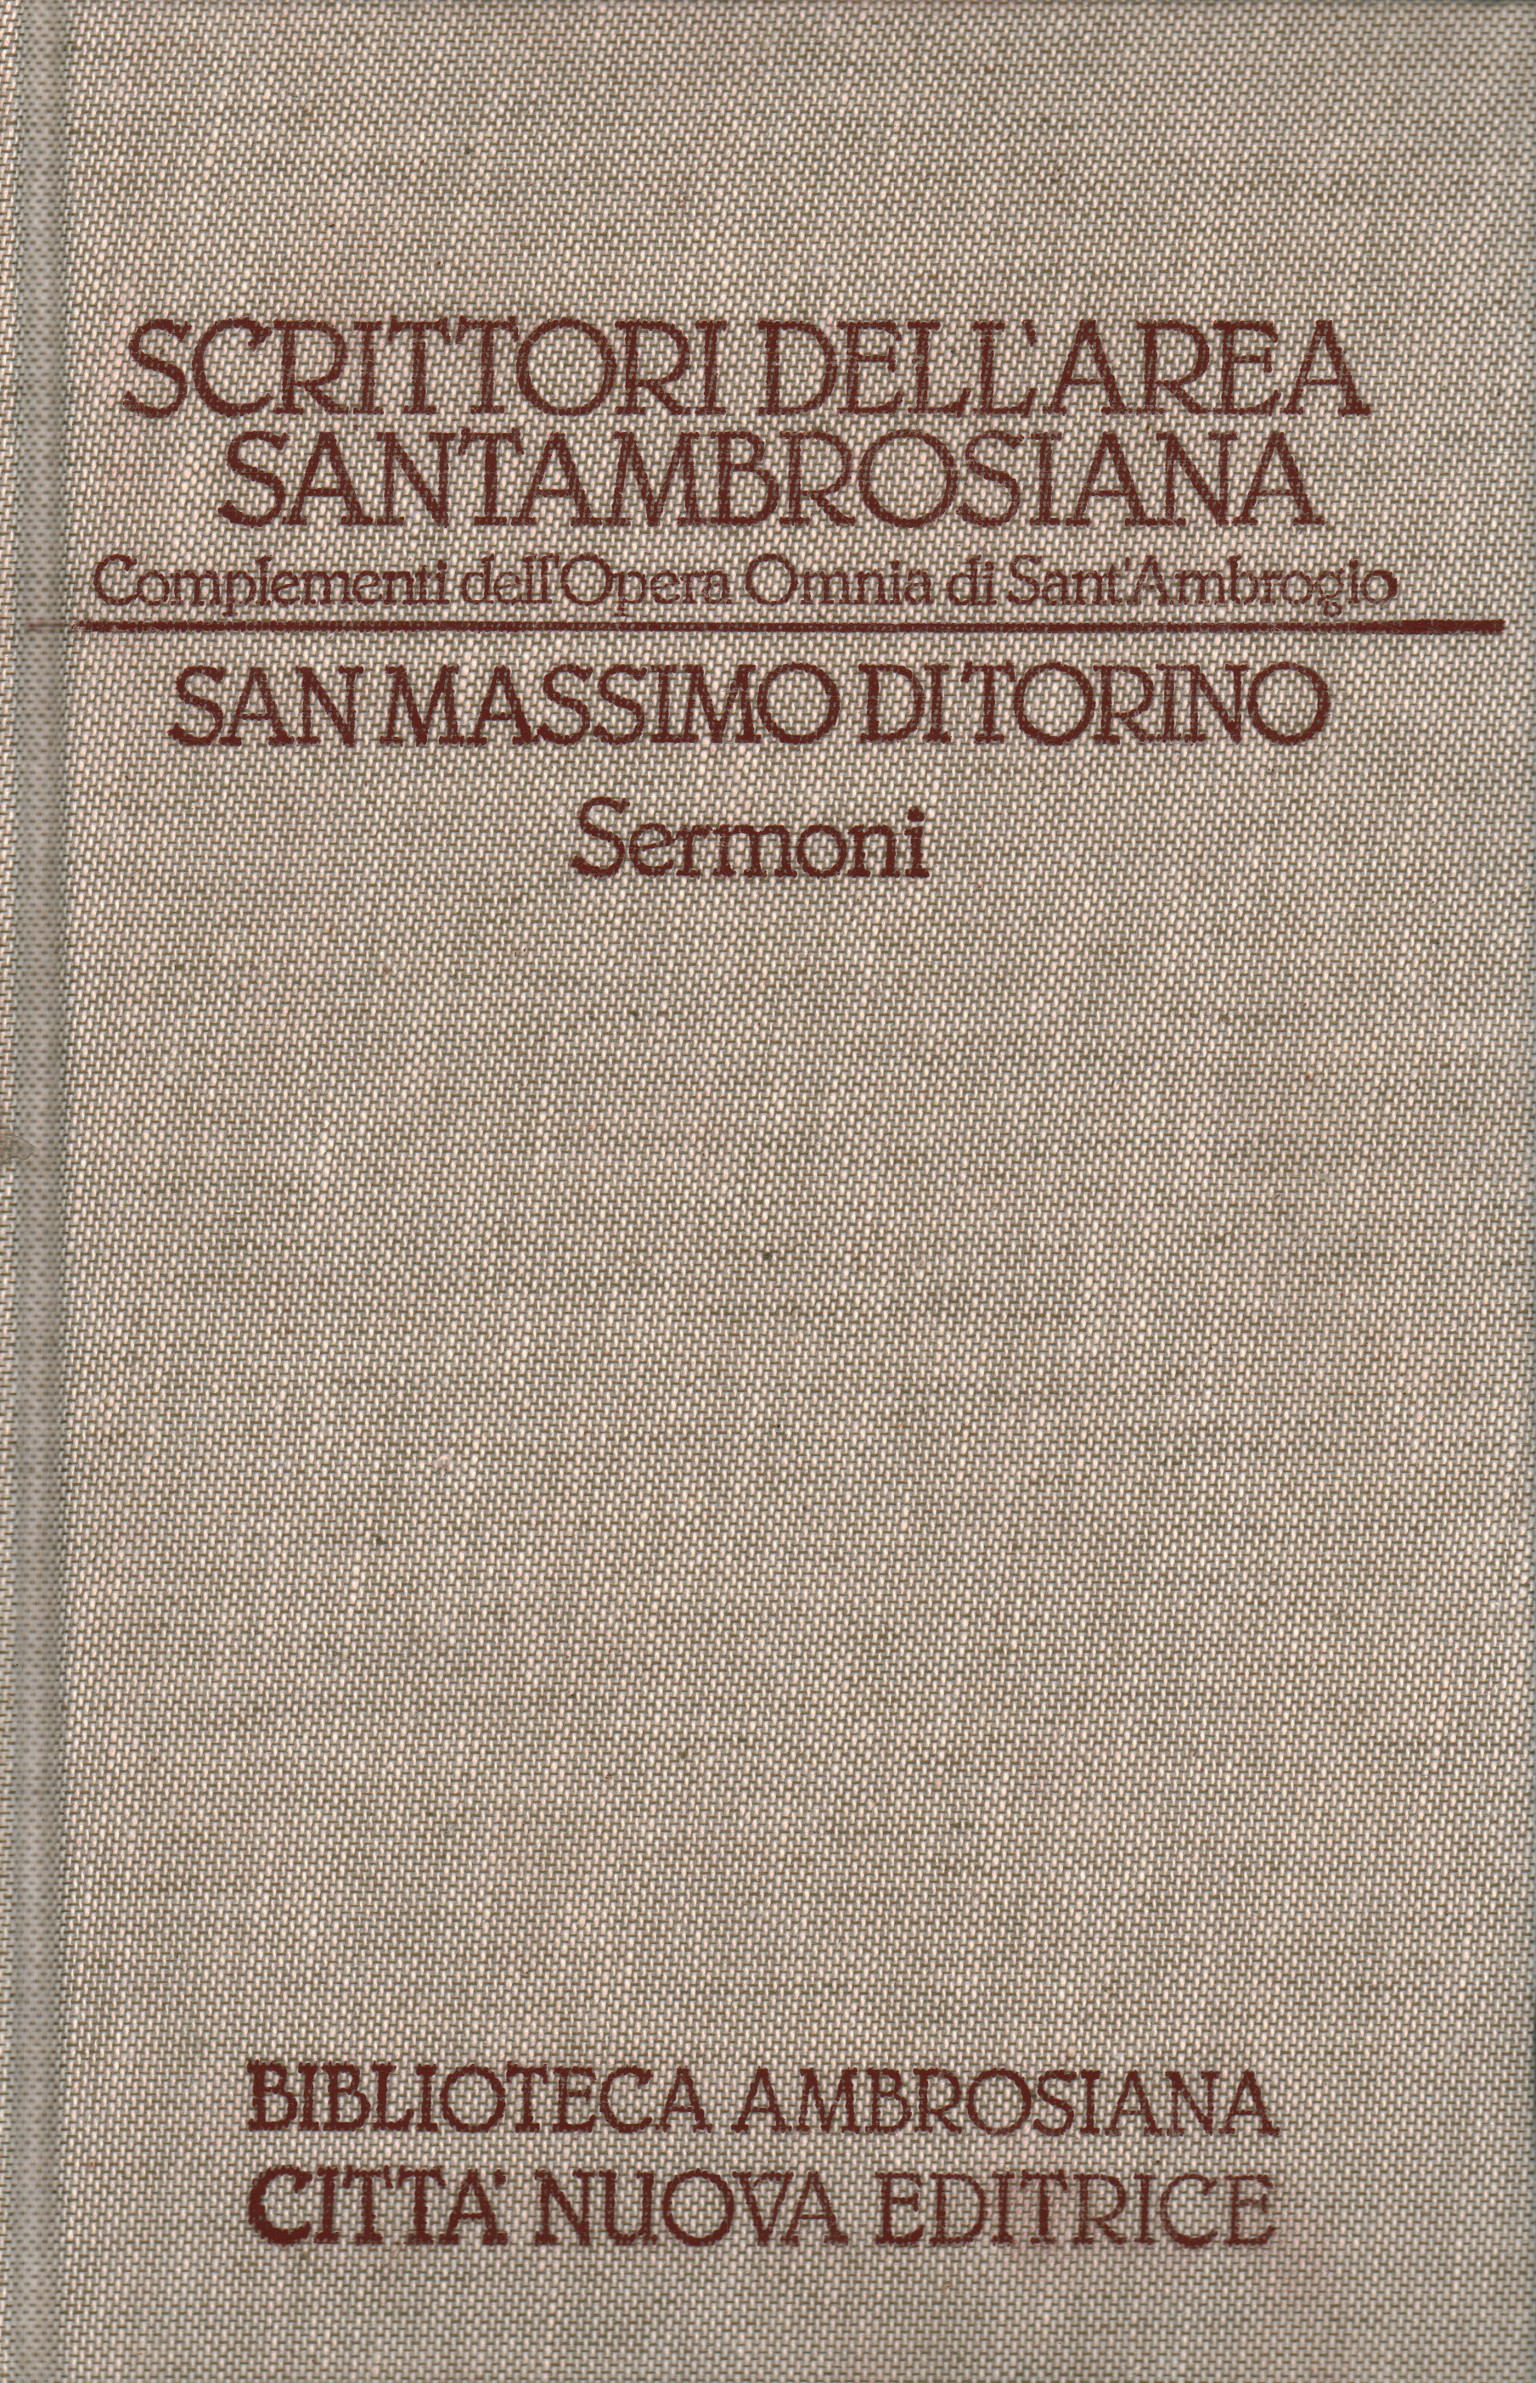 Escritores del área Santambrosiana., San Massimo de Turín - Sermoni (Volumen, San Massimo de Turín. Sermoni